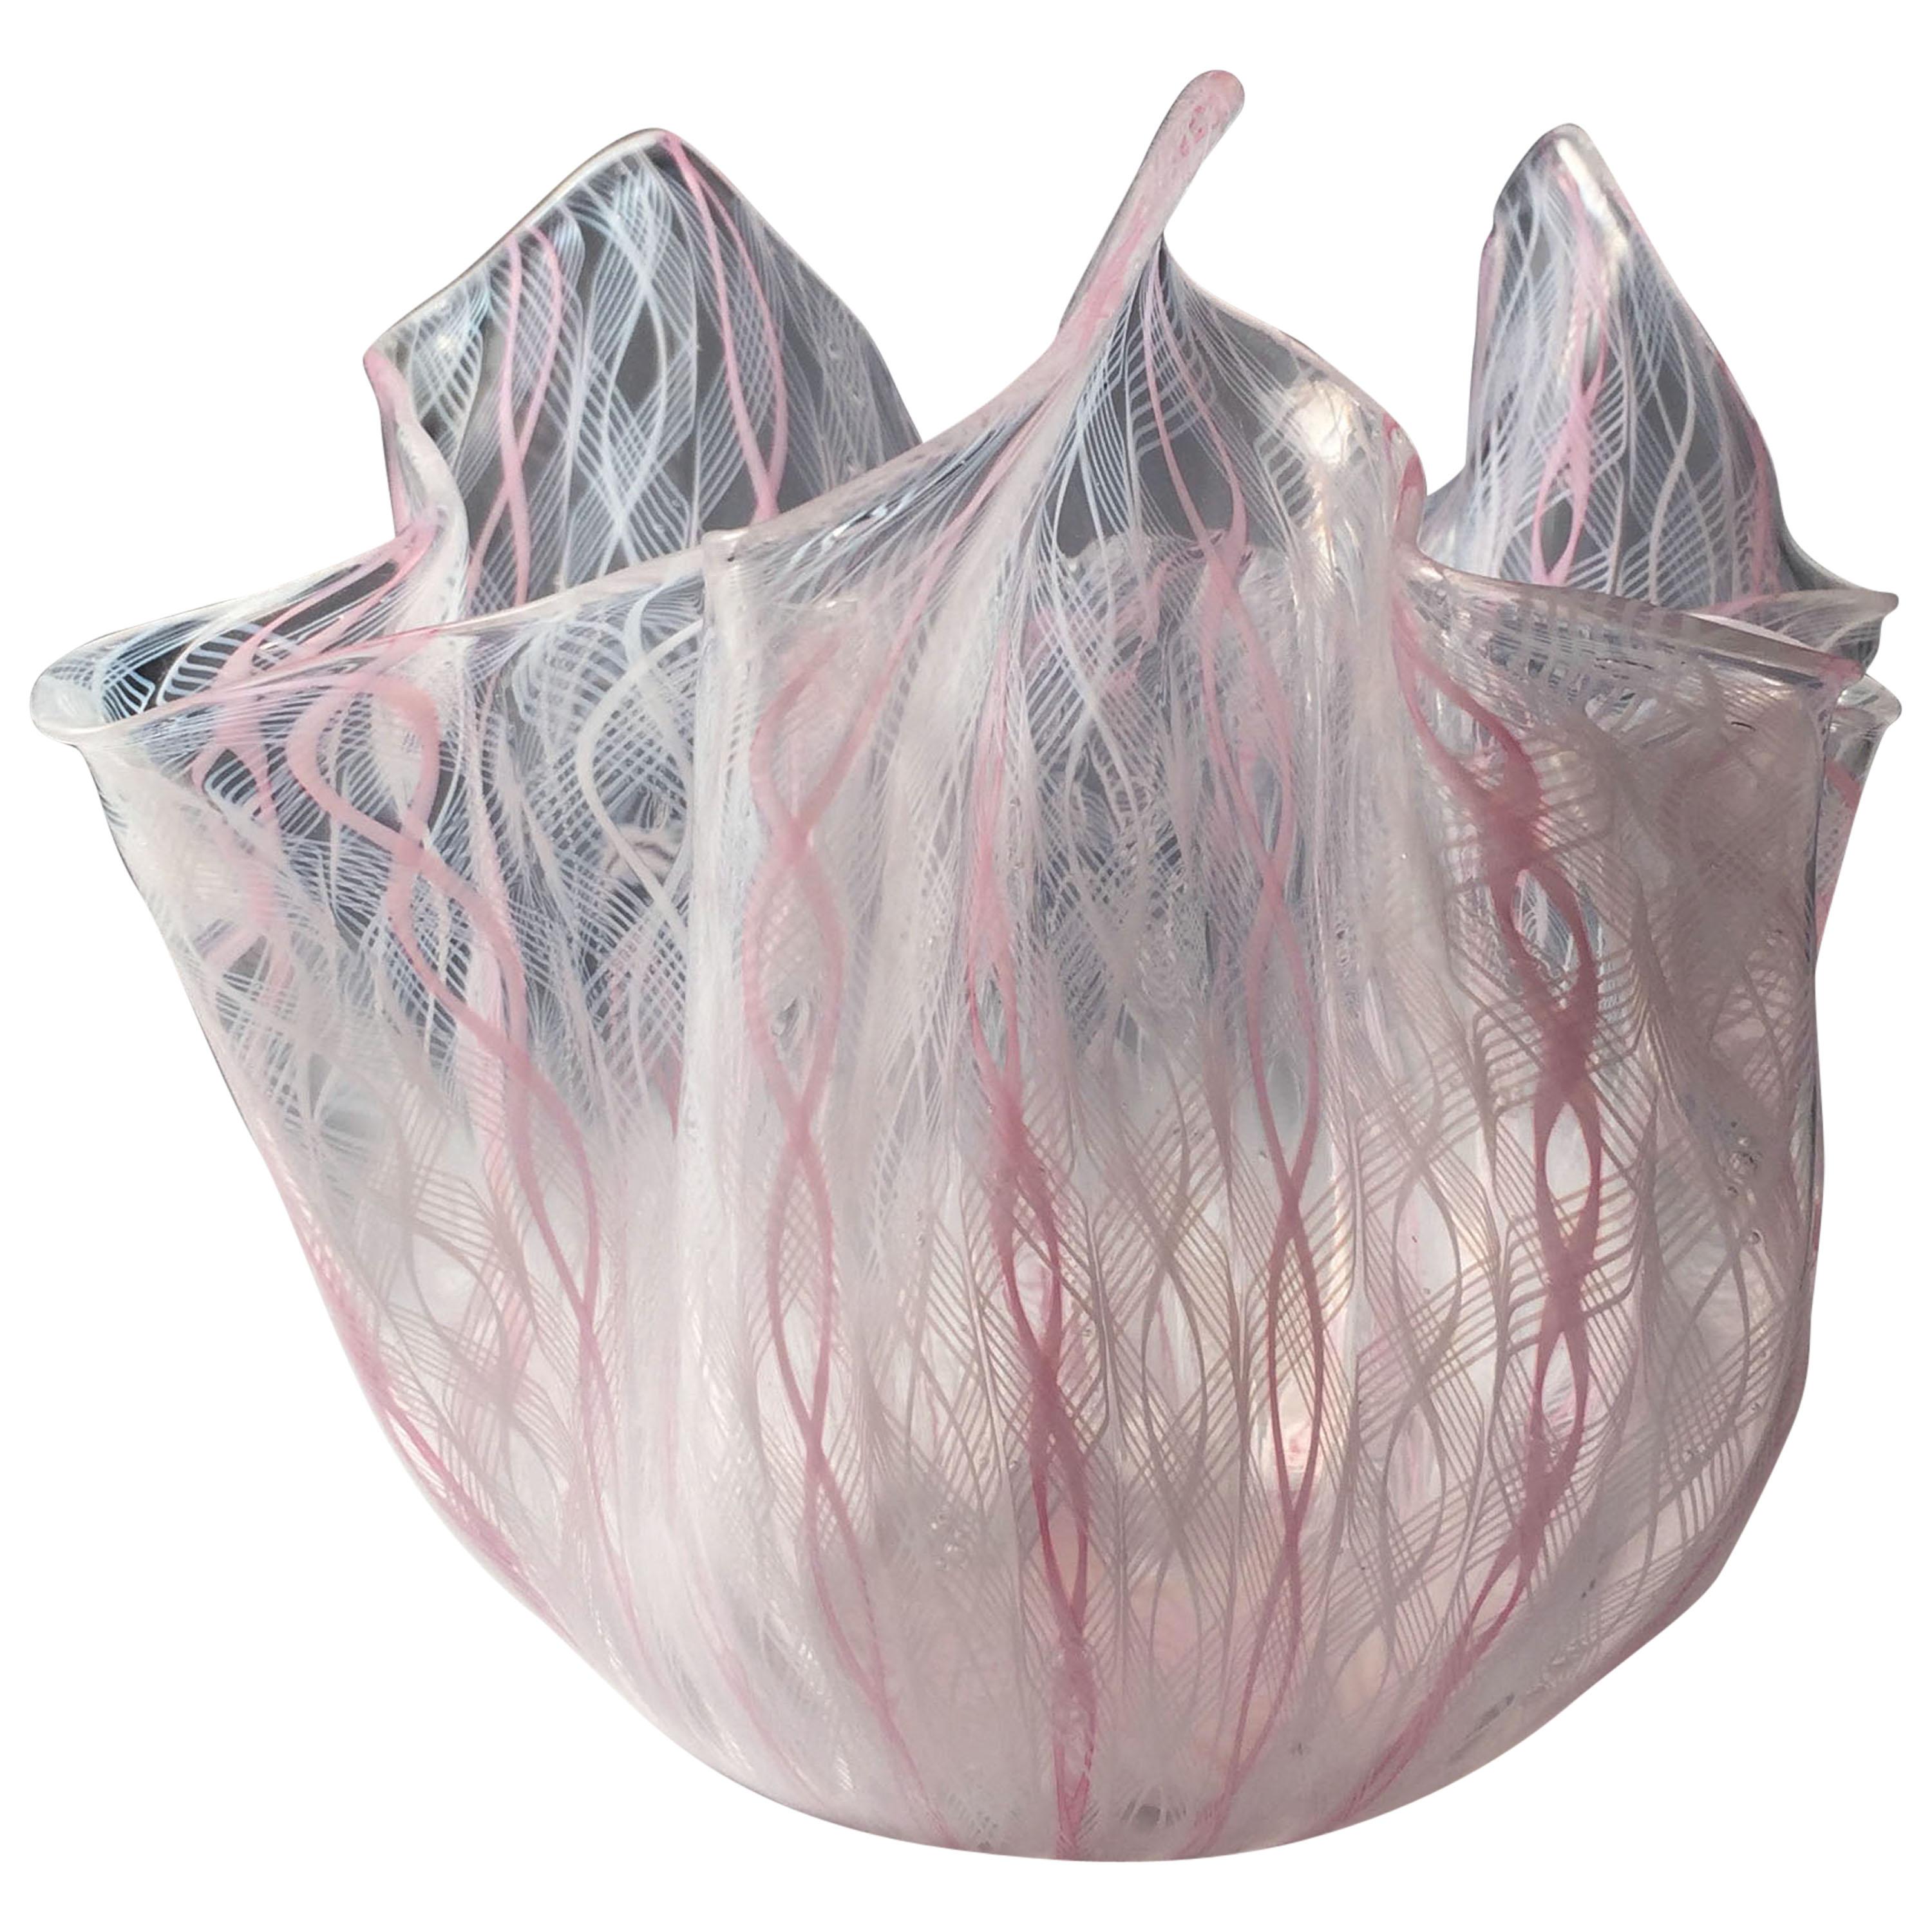 Signed Venini Fazzoletto Handkerchief Glass Vase by Fulvio Bianconi